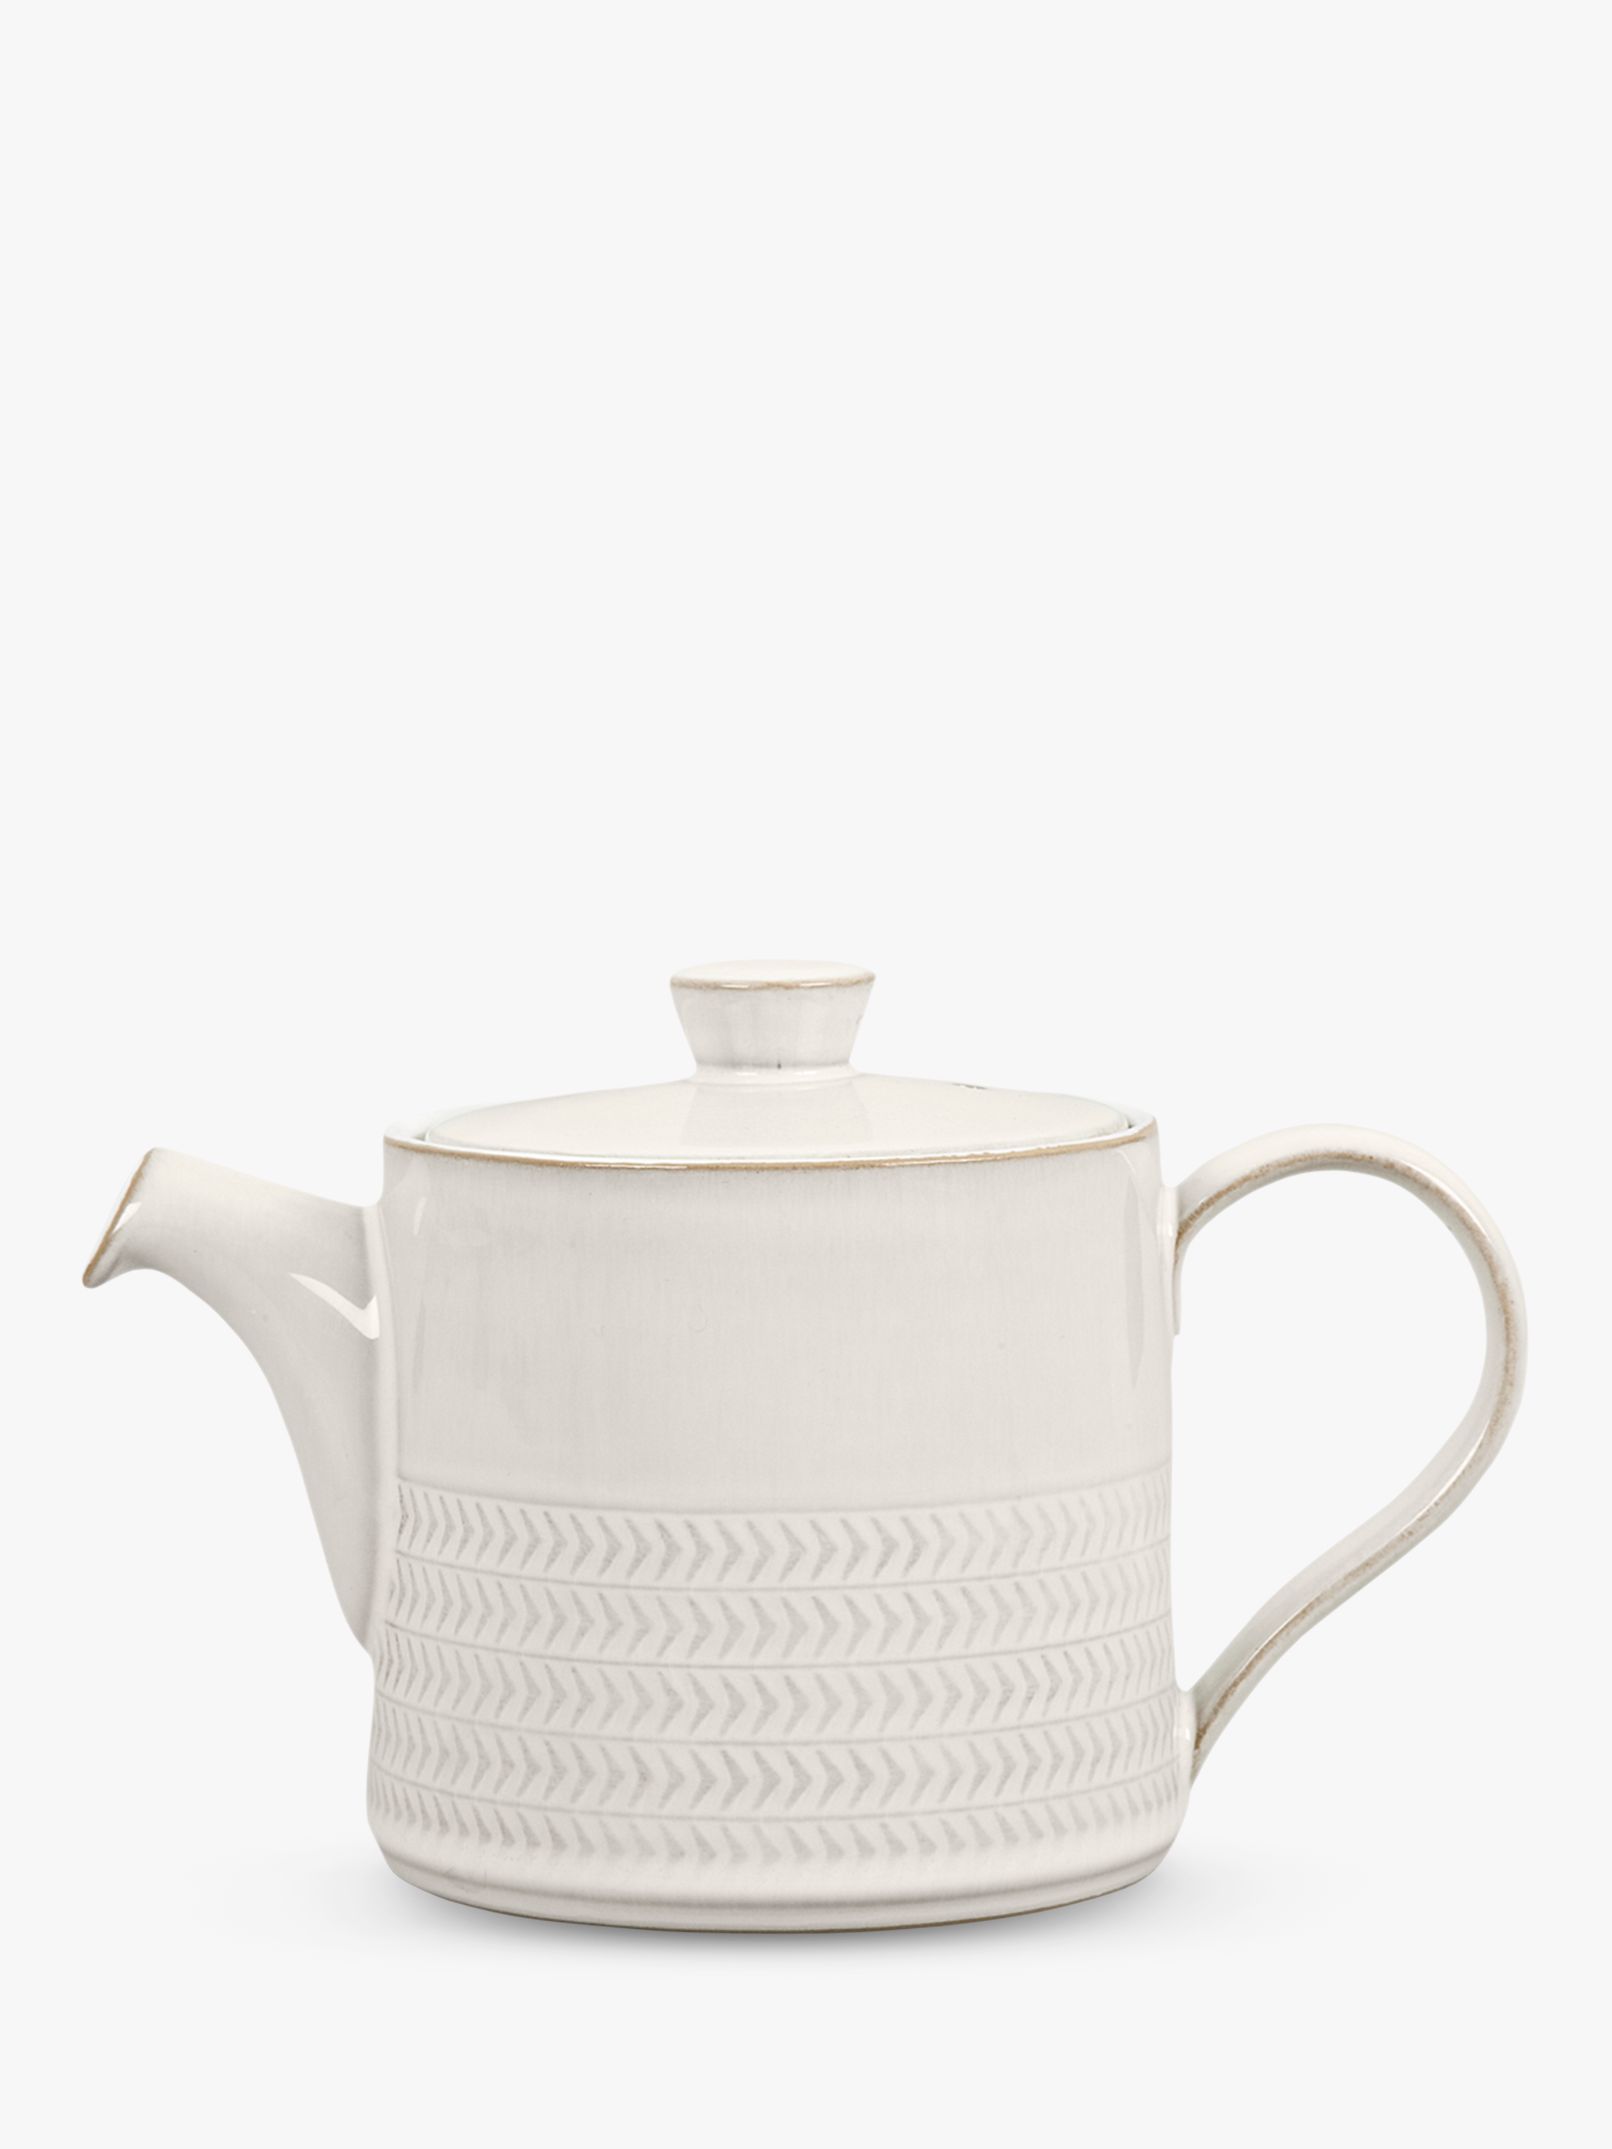 Denby Natural Canvas Textured Teapot, 920ml